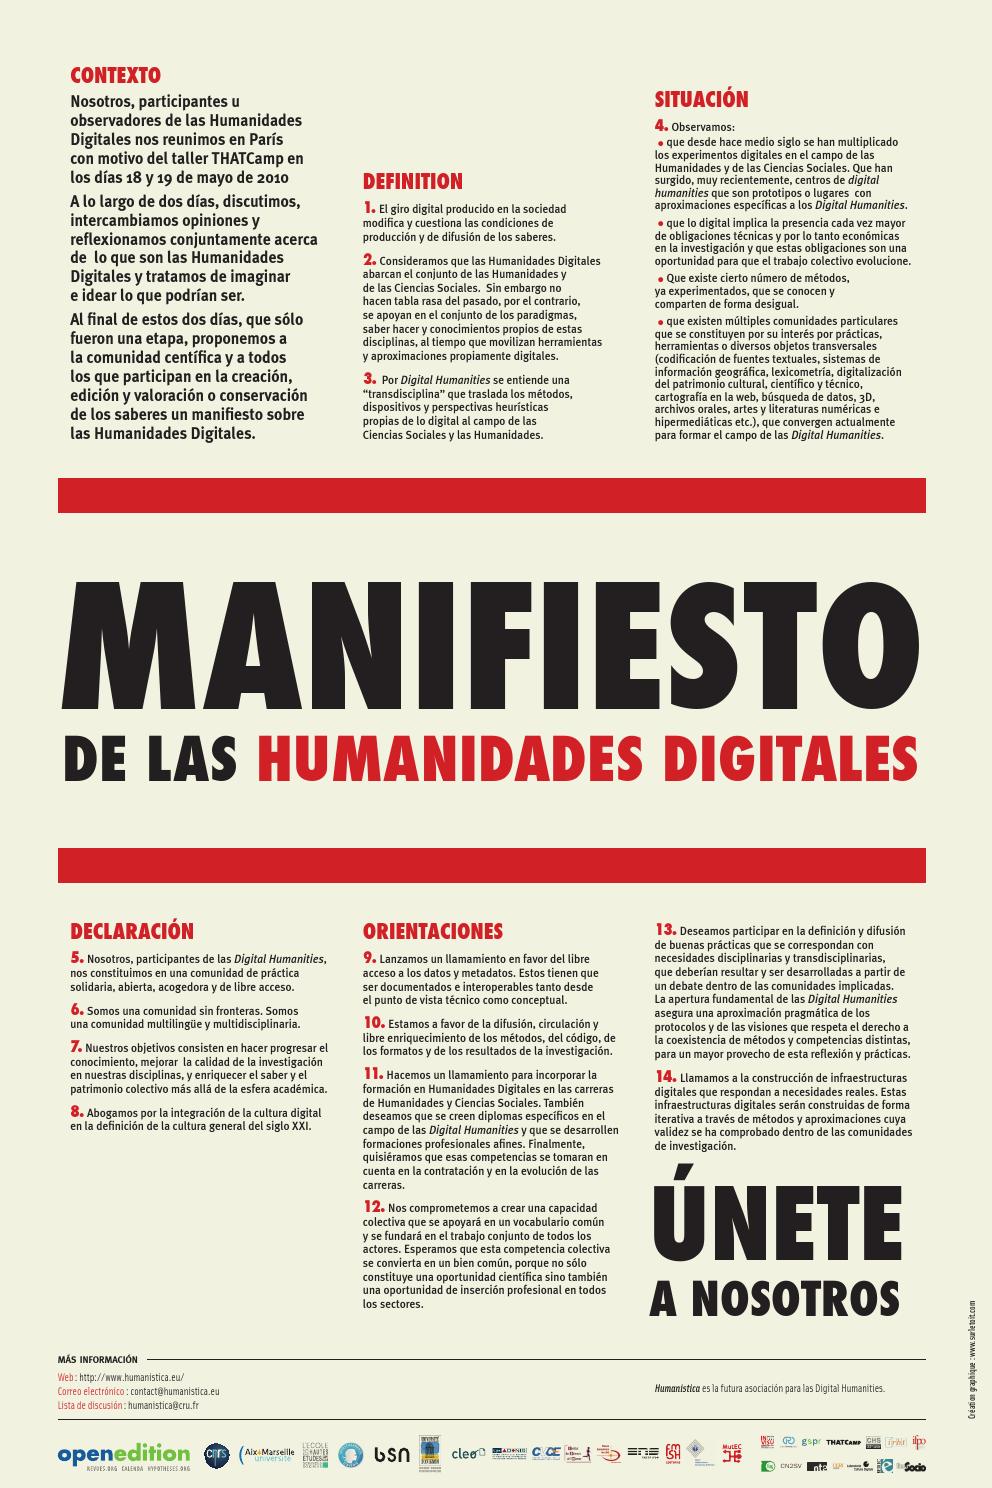 Manifiesto de las Humanidades Digitales